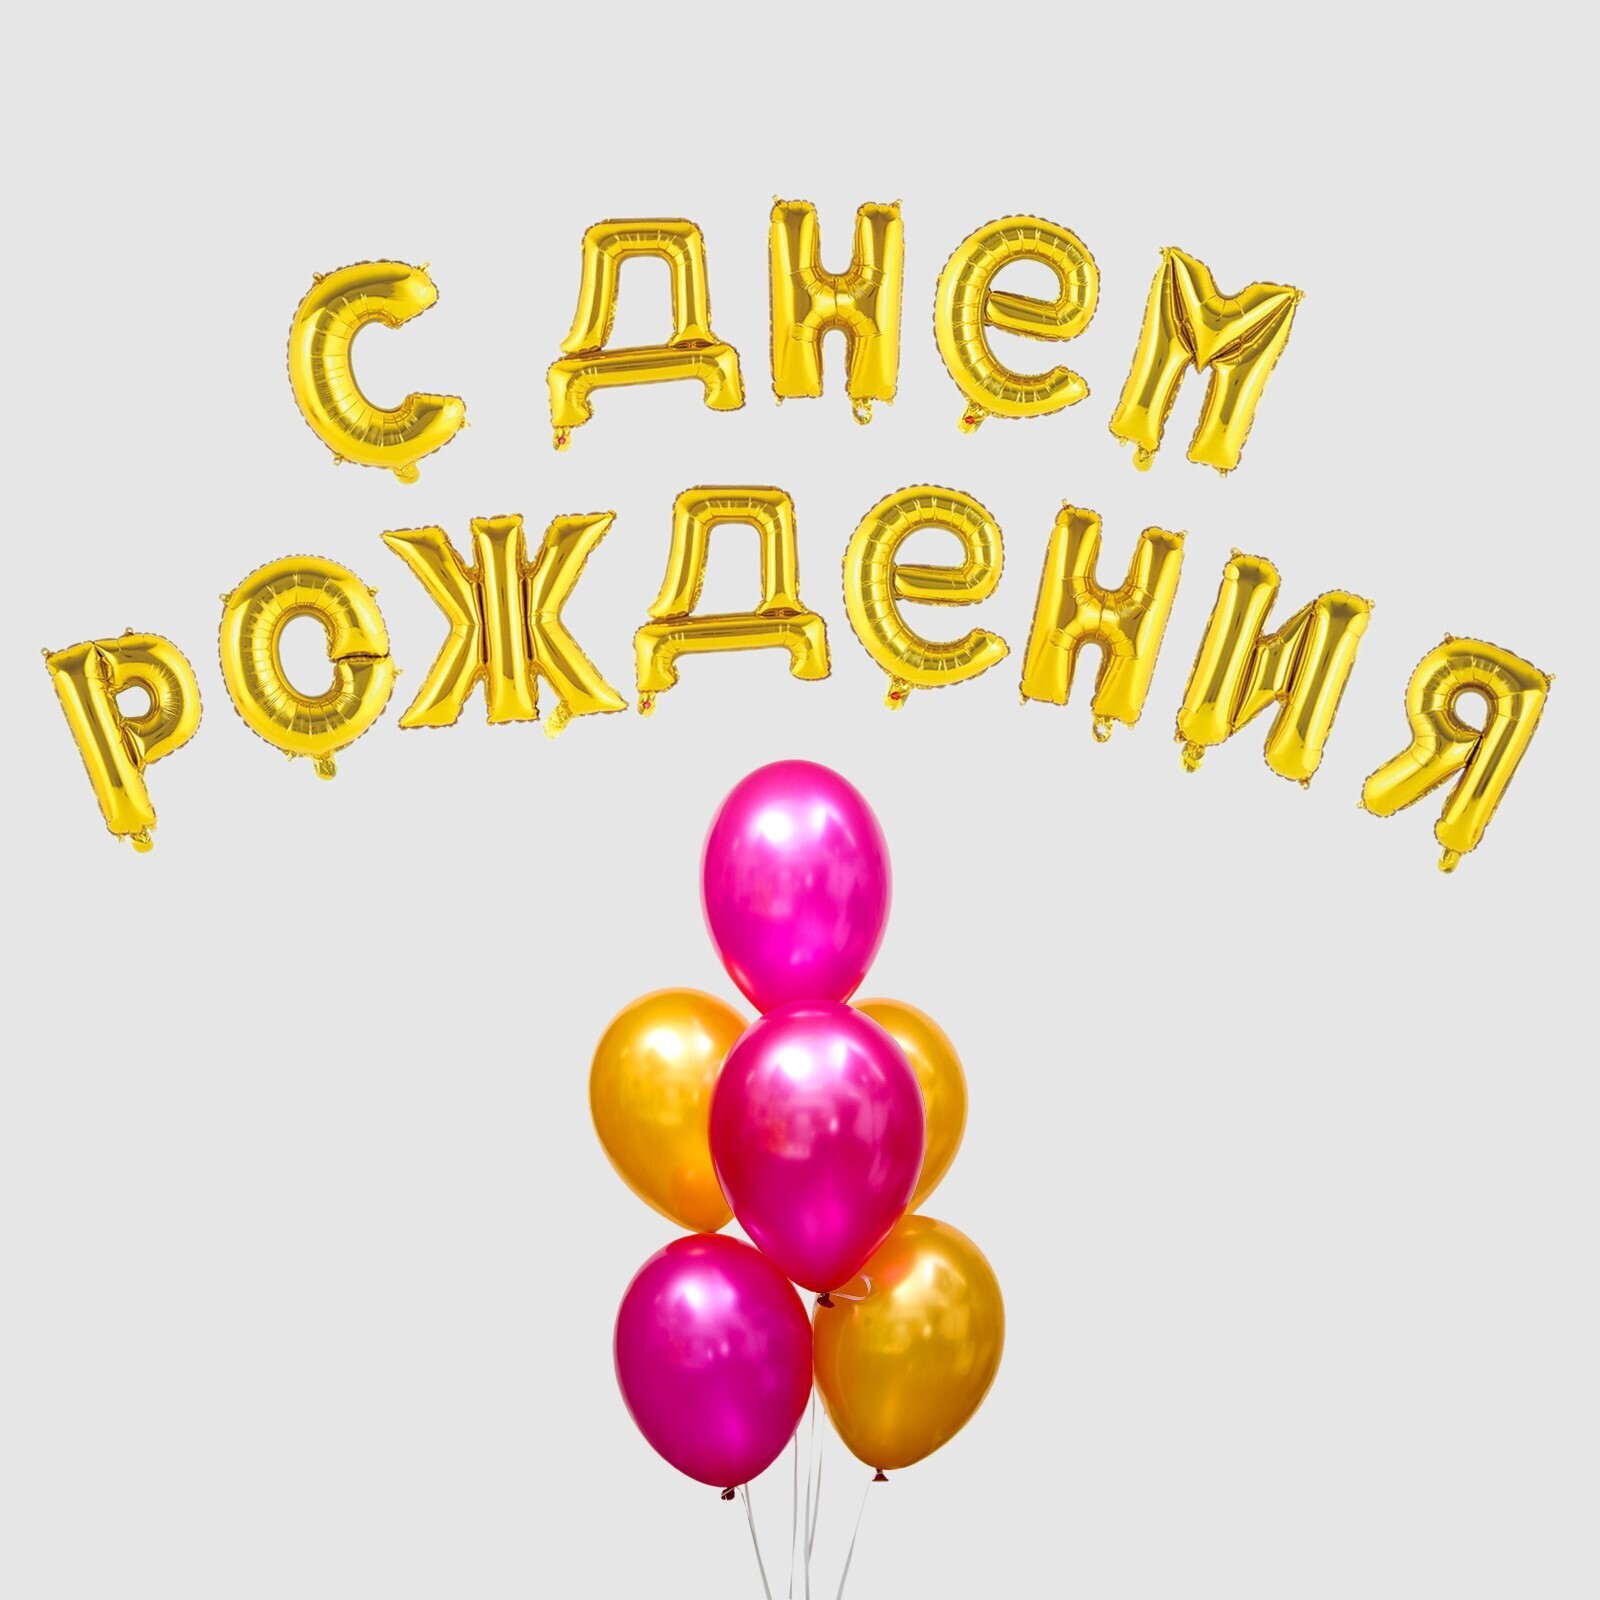 Поздравить с днем рождения буквами. Буквы с днем рождения. Шары-буквы "с днем рождения". Поздравляем с днем рождения надпись. Воздушные шары буквы с днем рождения.